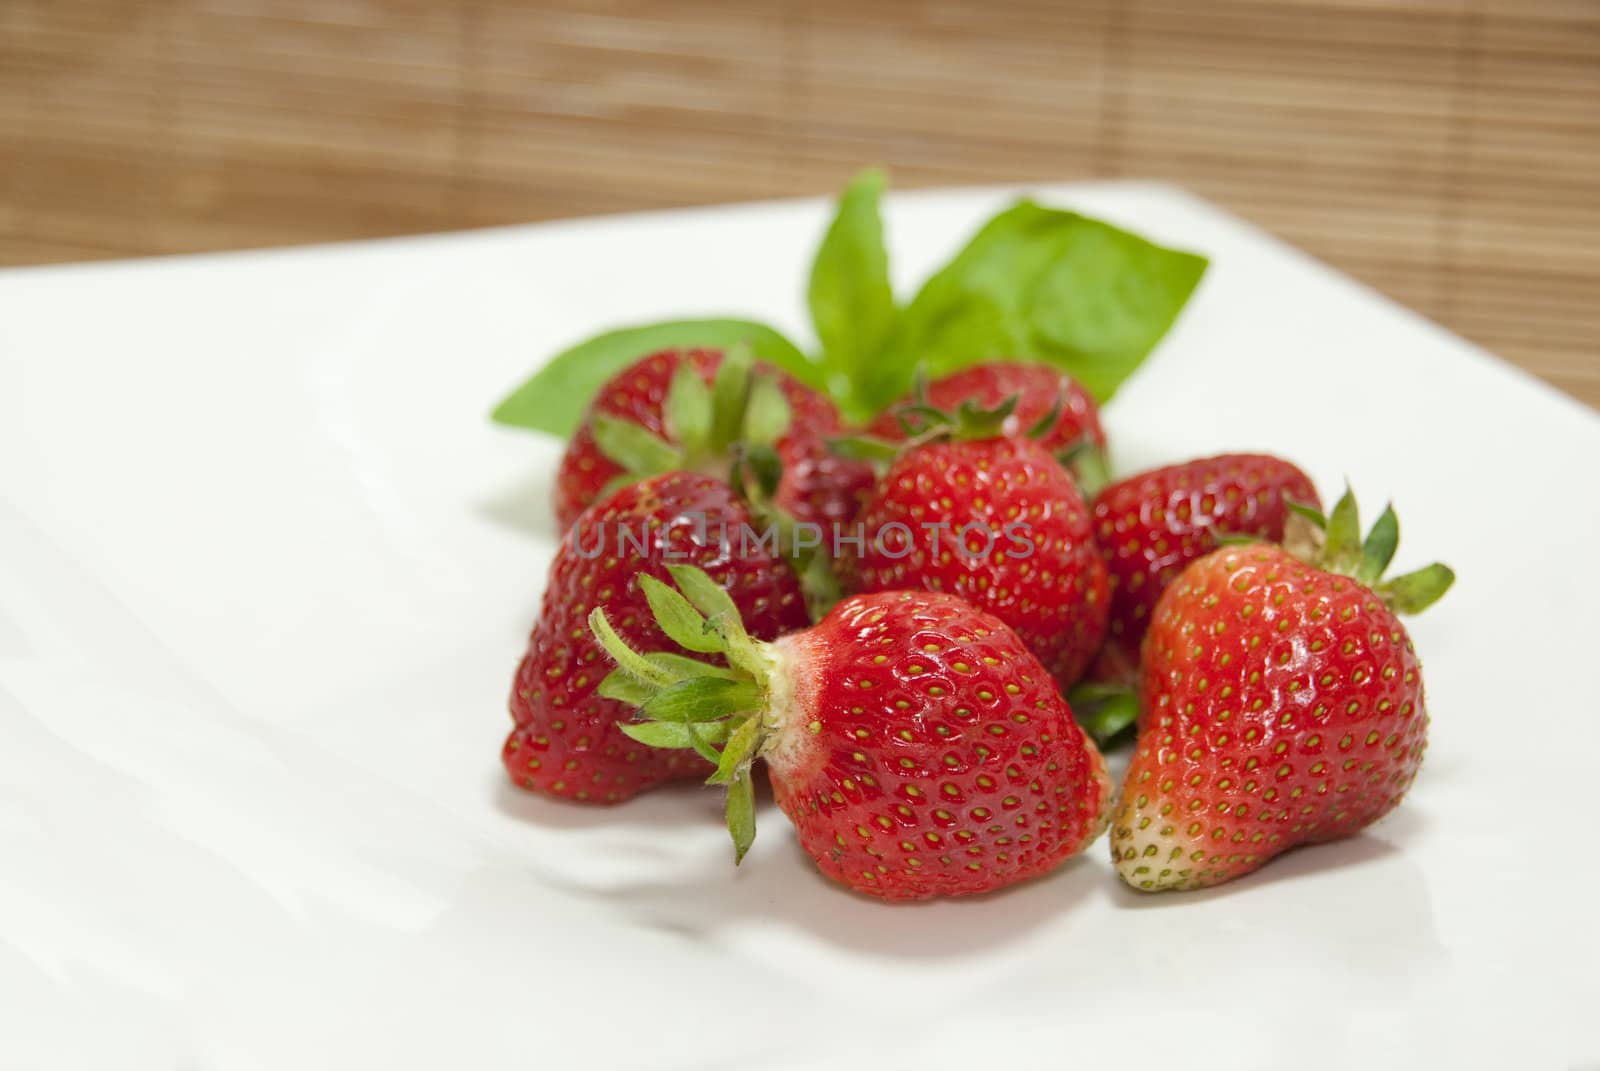 tasty strawberries by wojciechkozlowski